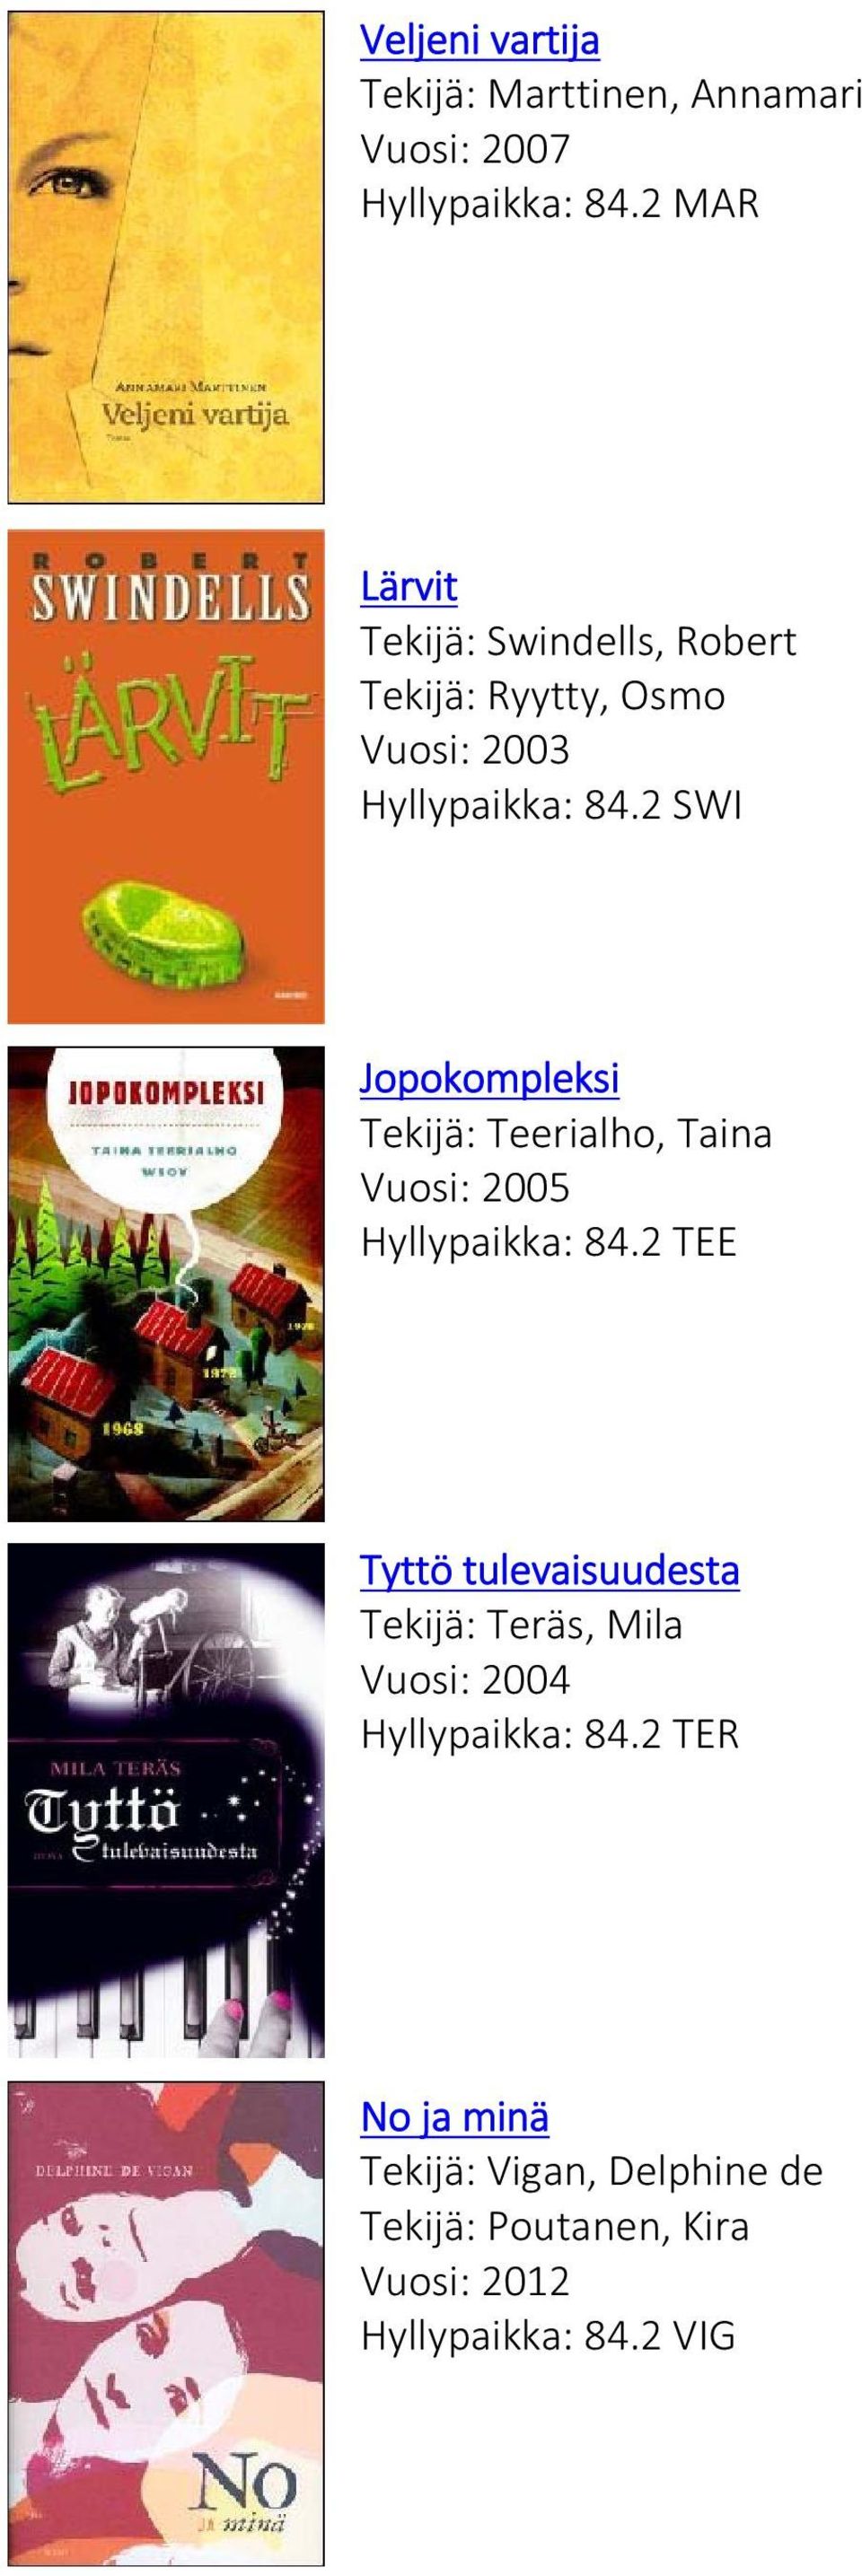 2 SWI Jopokompleksi Tekijä: Teerialho, Taina Vuosi: 2005 Hyllypaikka: 84.